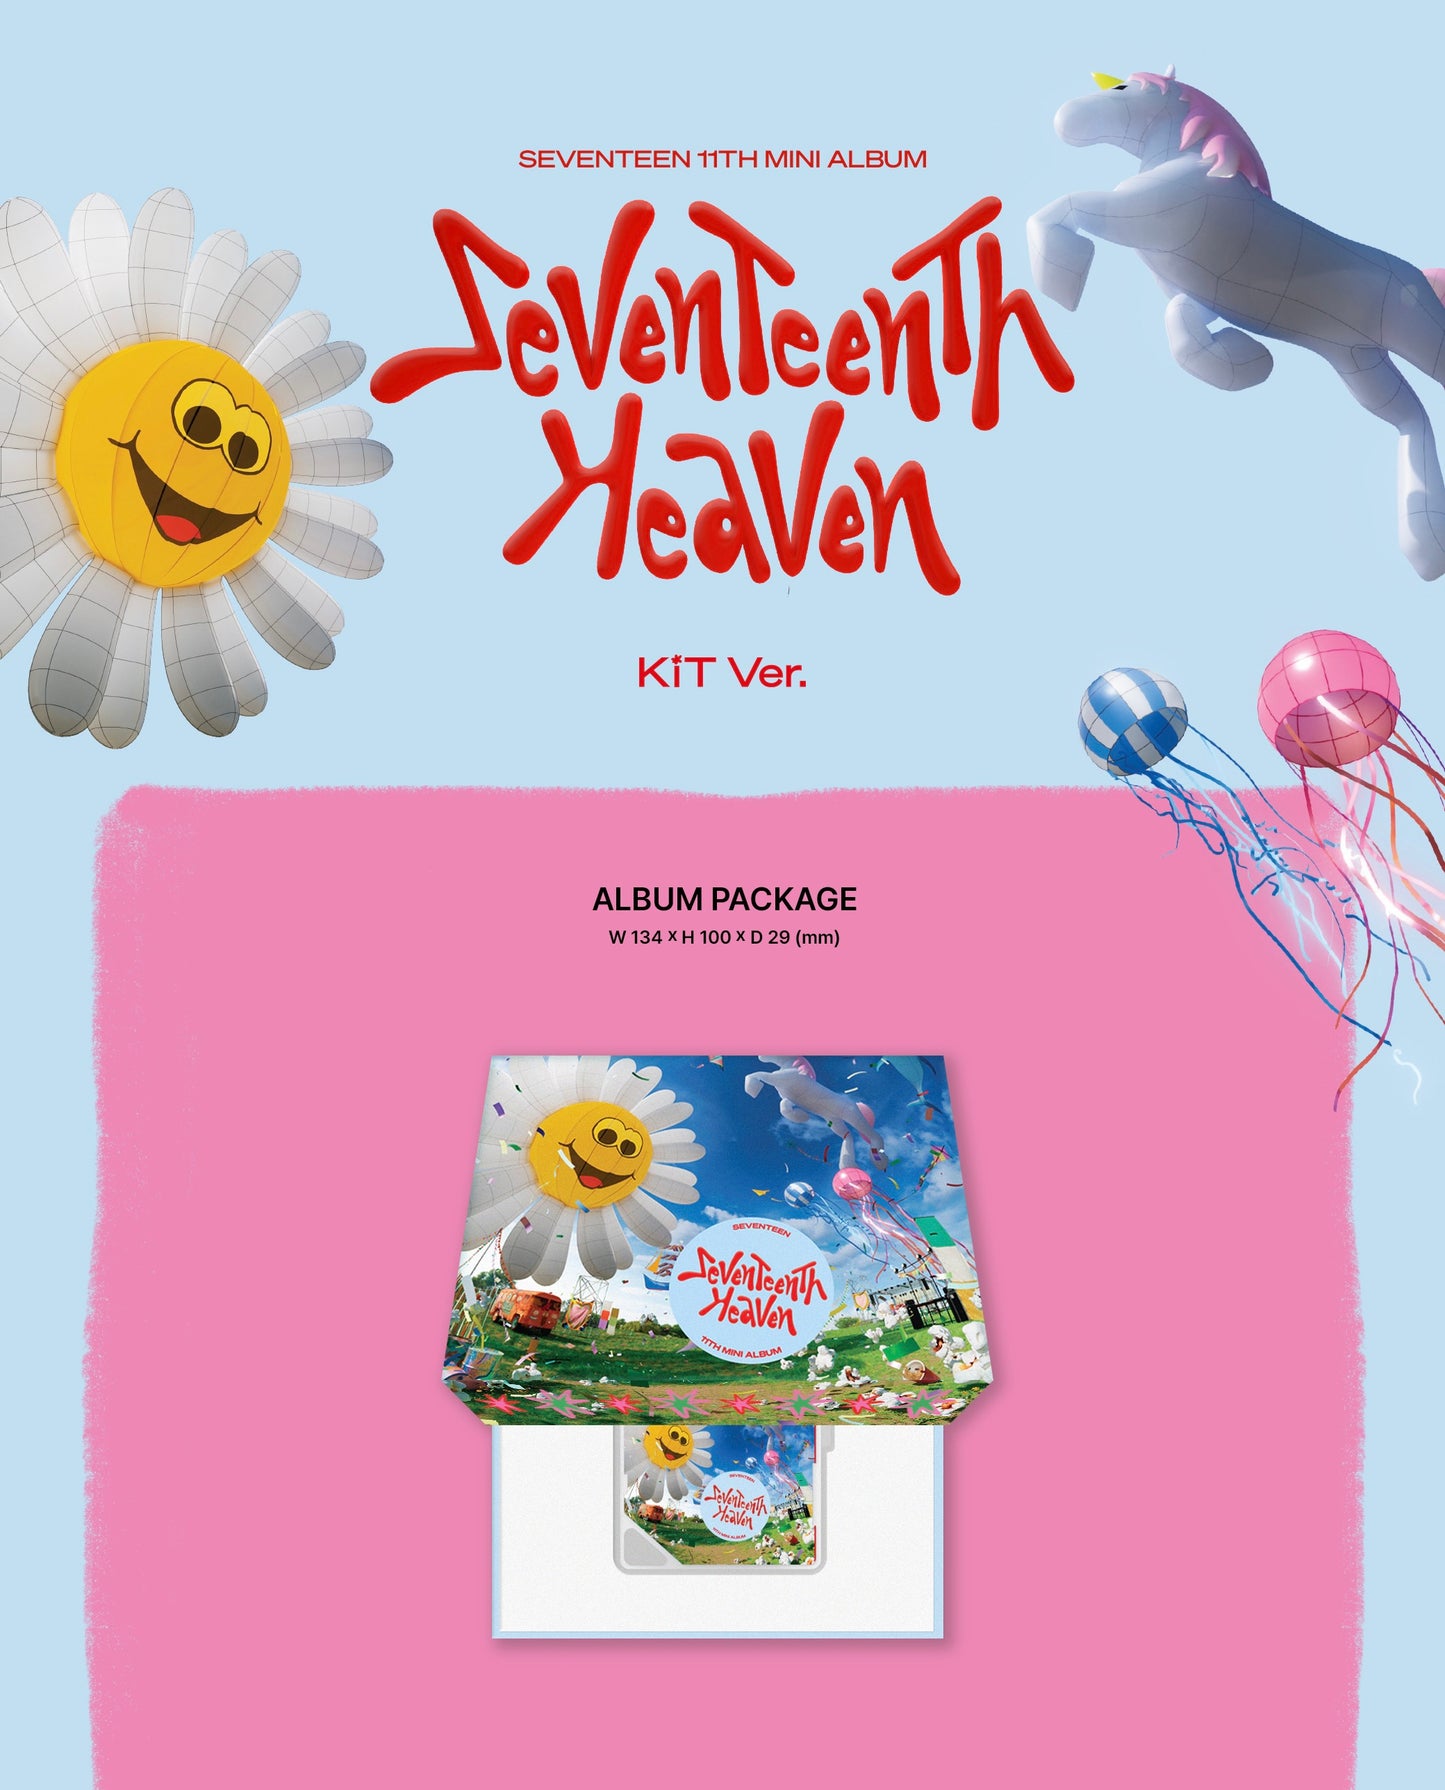 SEVENTEEN - Seventeenth Heaven